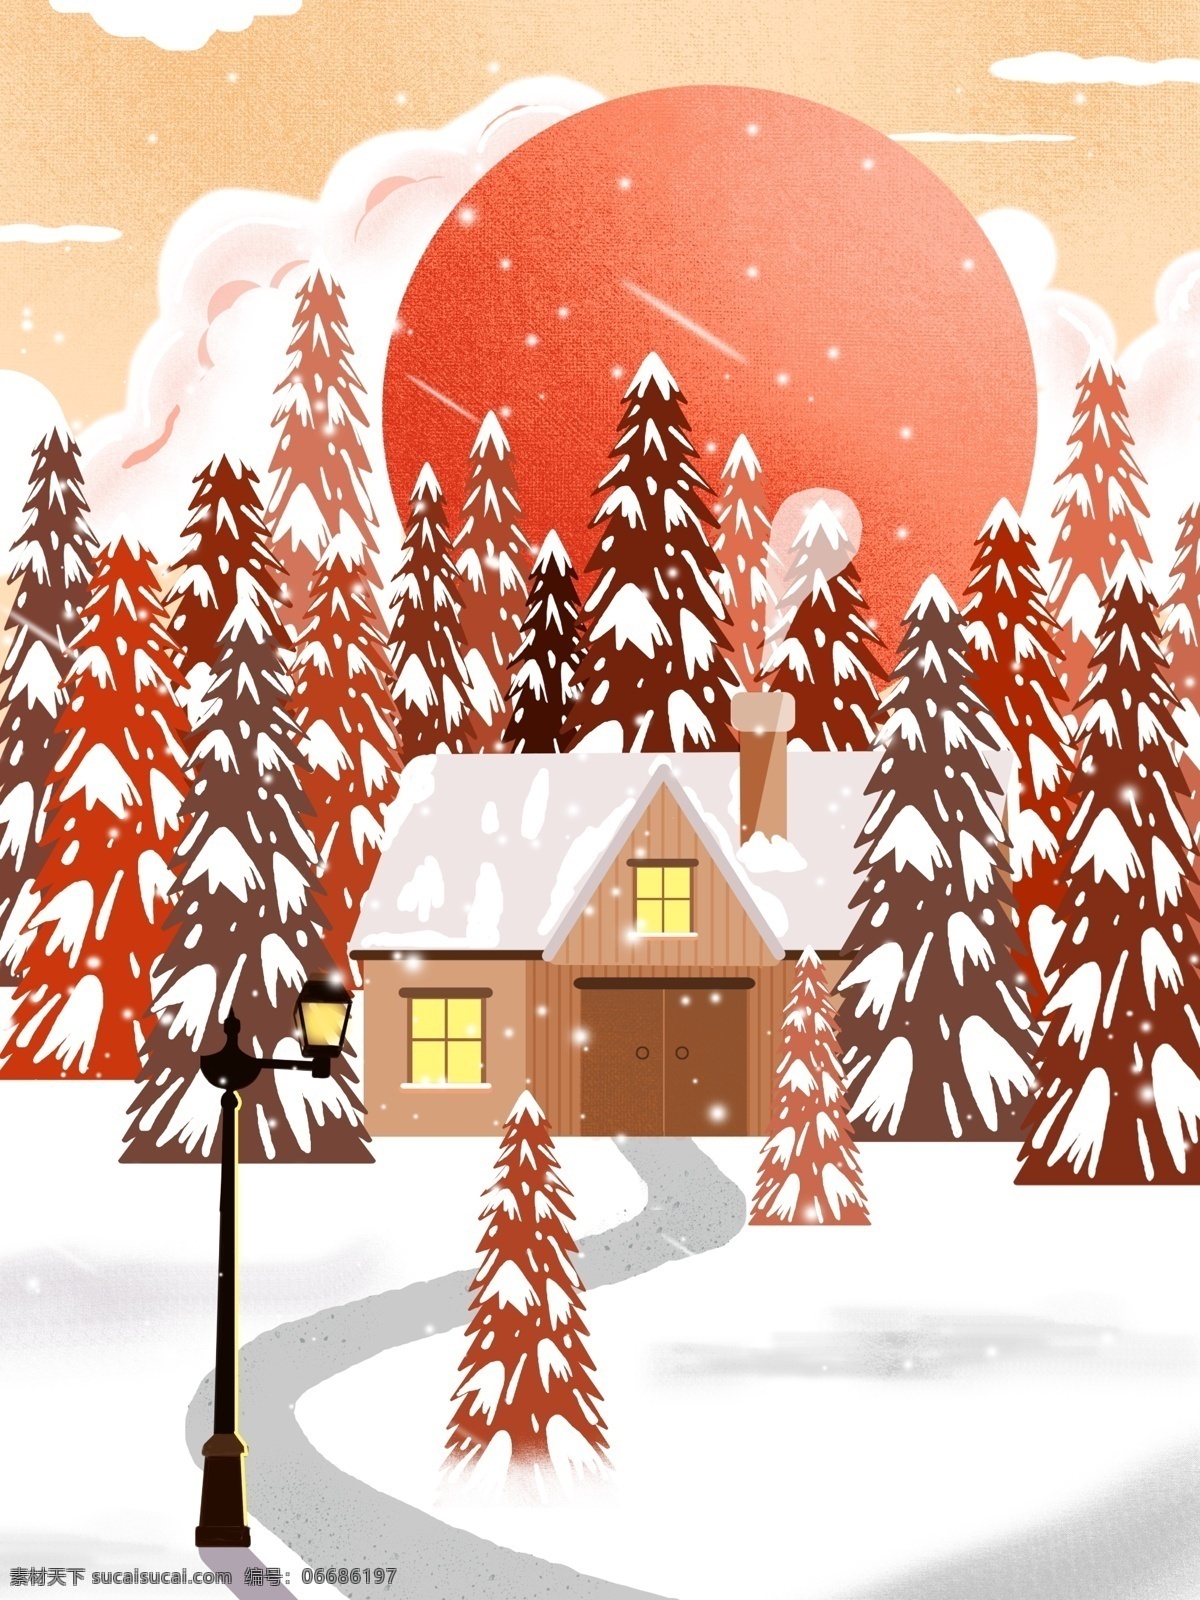 冬季 下雪 树林 背景 圆月 路灯 雪地 雪景 唯美 手绘背景 特邀背景 促销背景 背景展板图 背景图 创意